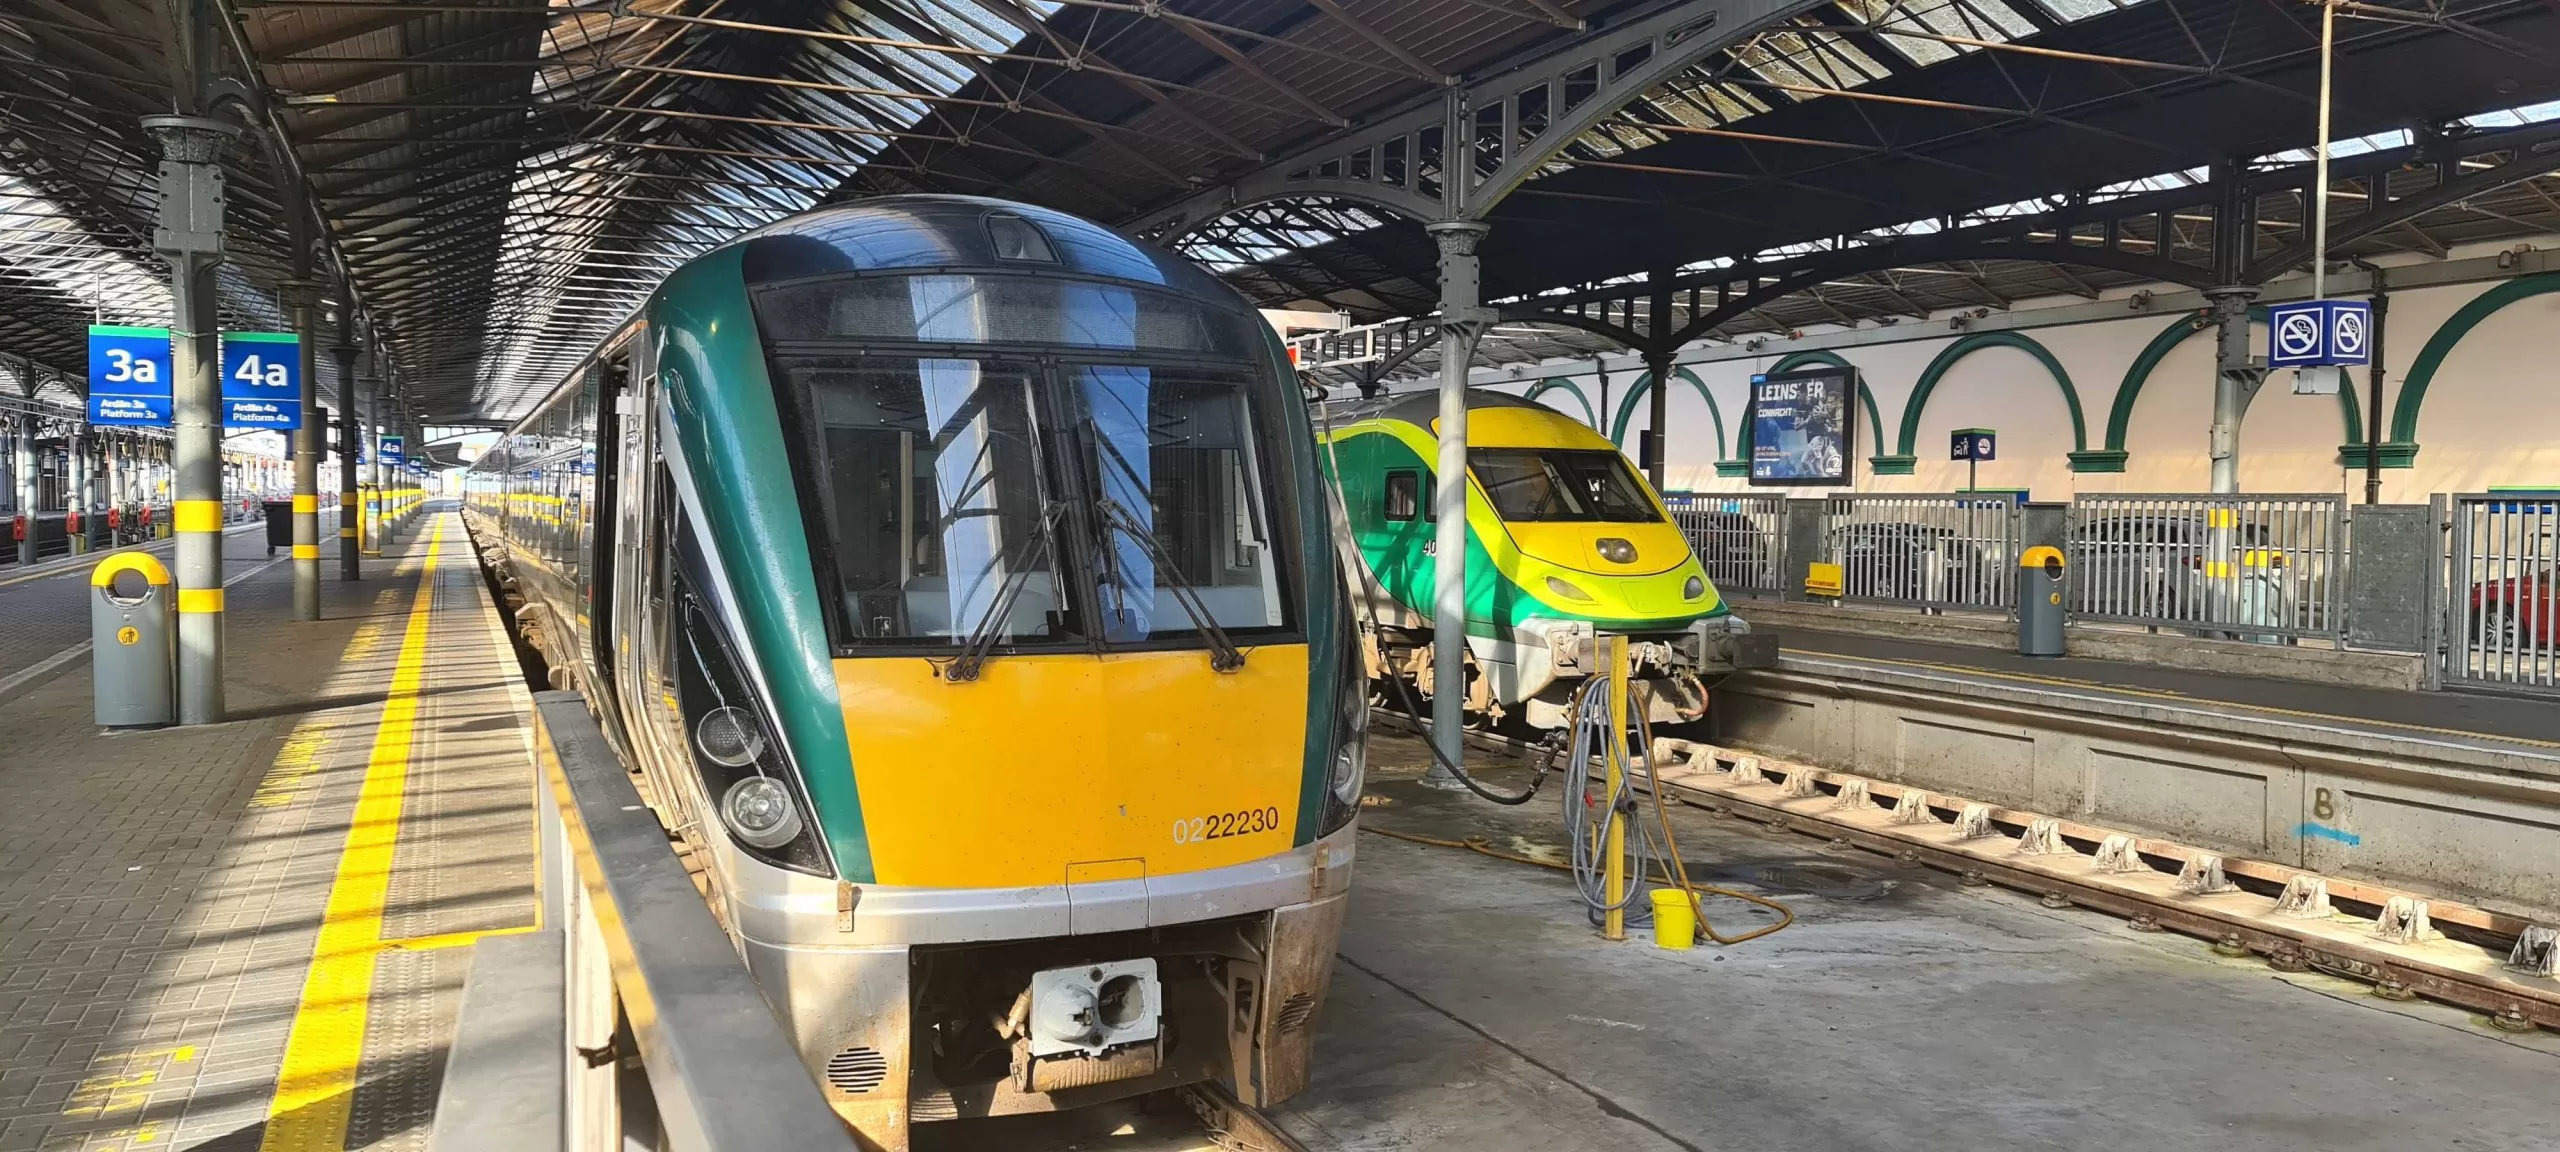 EN50126, EN50128 and EN50129 Training by Digital Transit Limited for Irish Rail